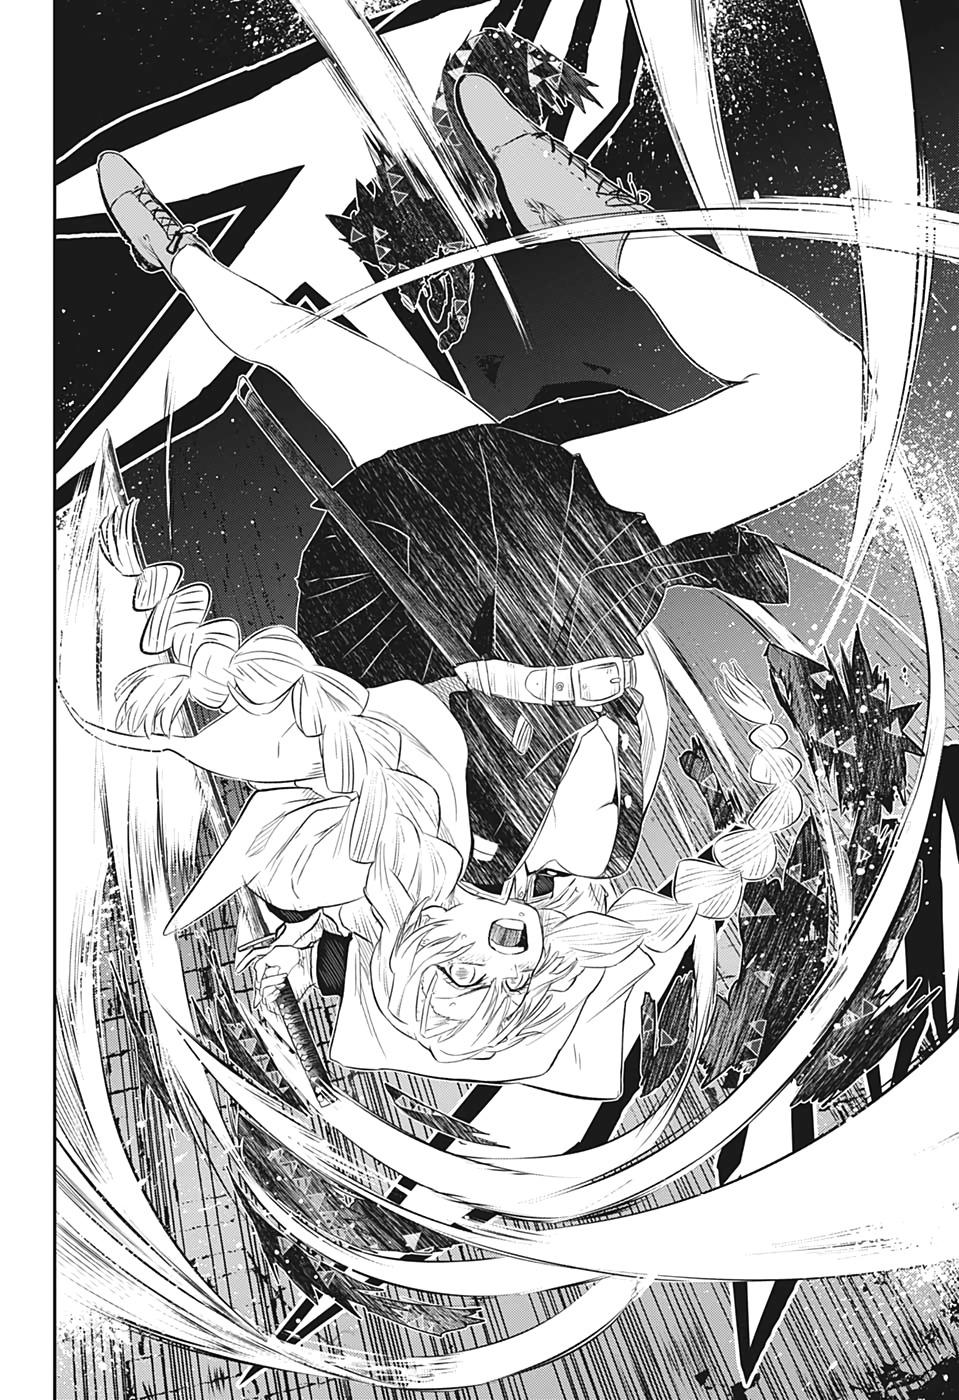 Demon Slayer: Kimetsu no Yaiba - Page 2 of 20